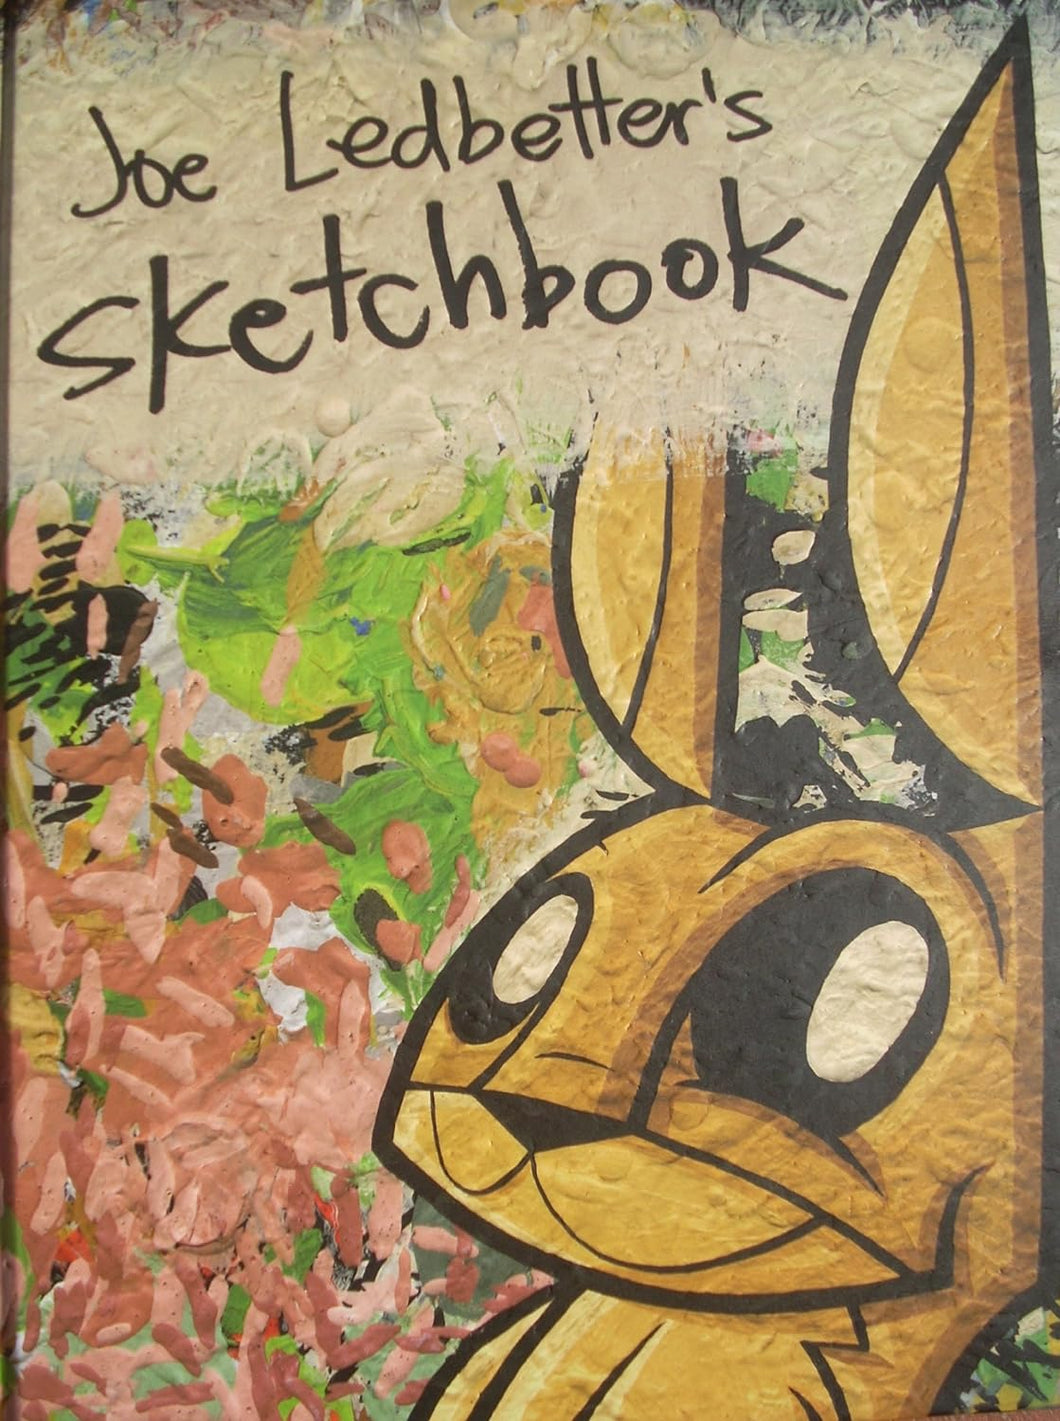 Joe Ledbetter Sketchbook Hardcover